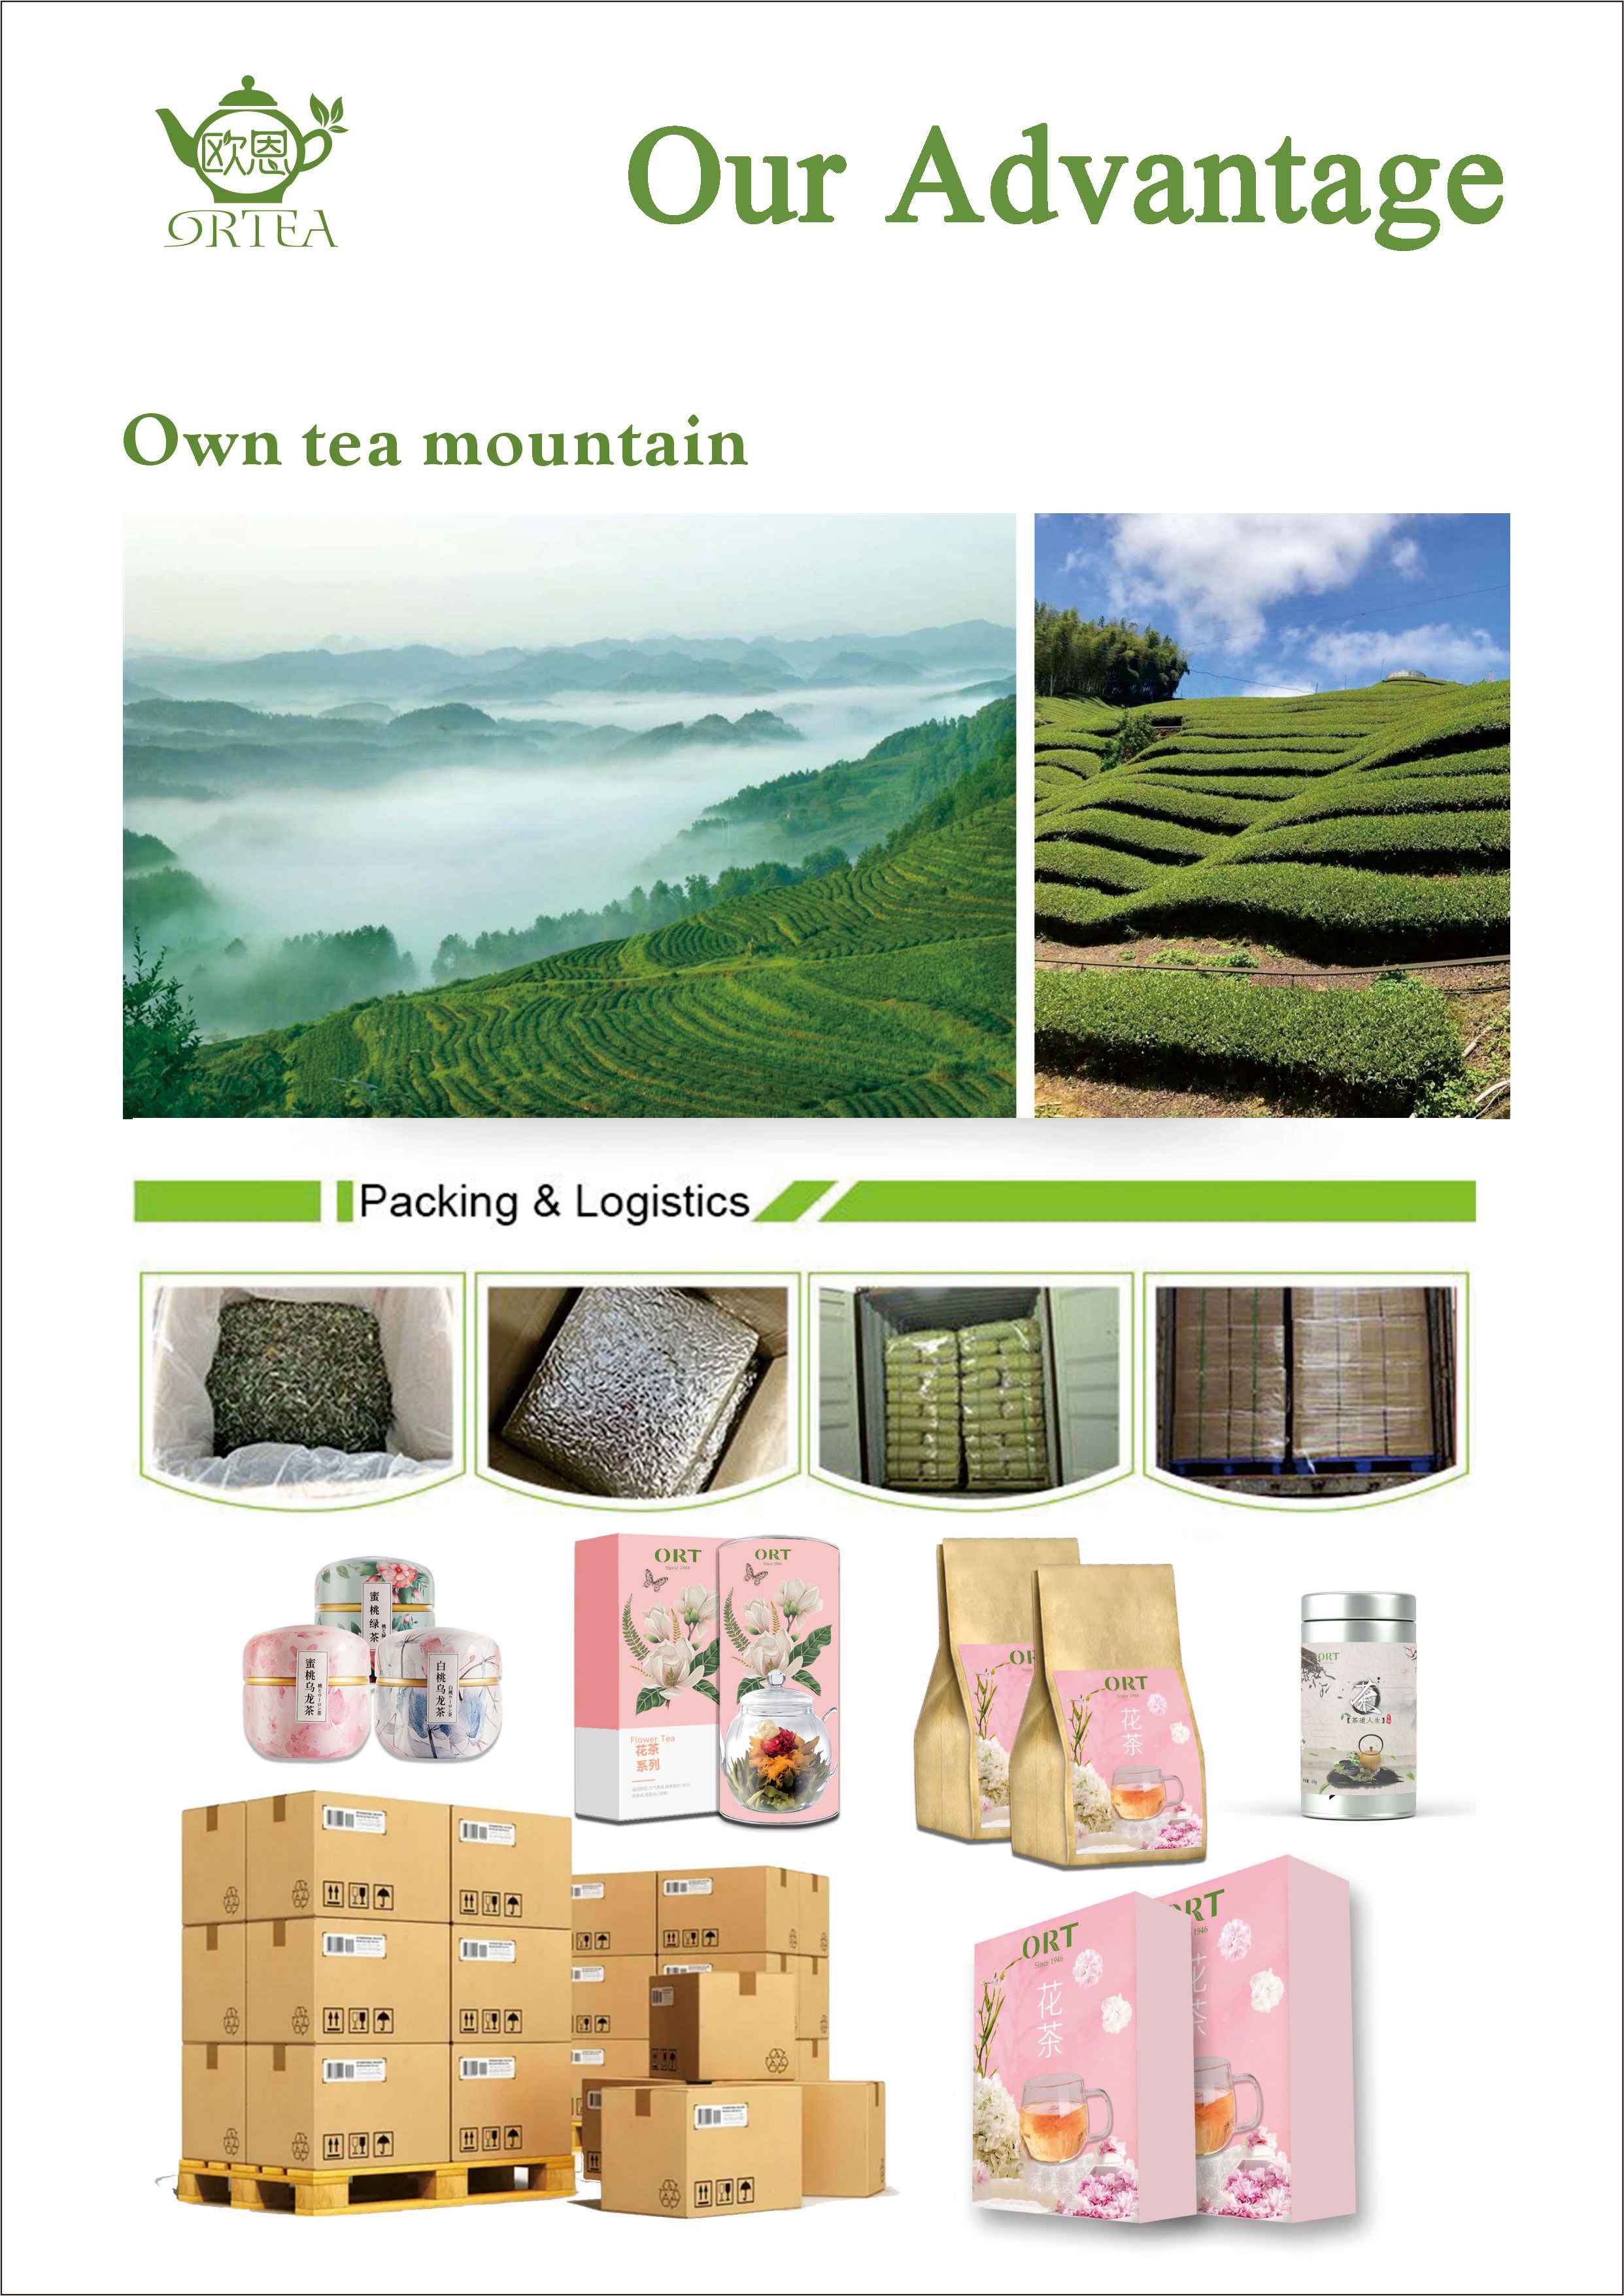 Huang Zhixiang Oolong Tea-